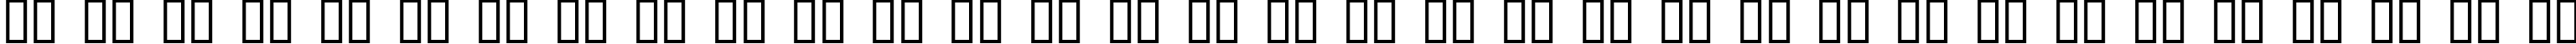 Пример написания русского алфавита шрифтом Adler